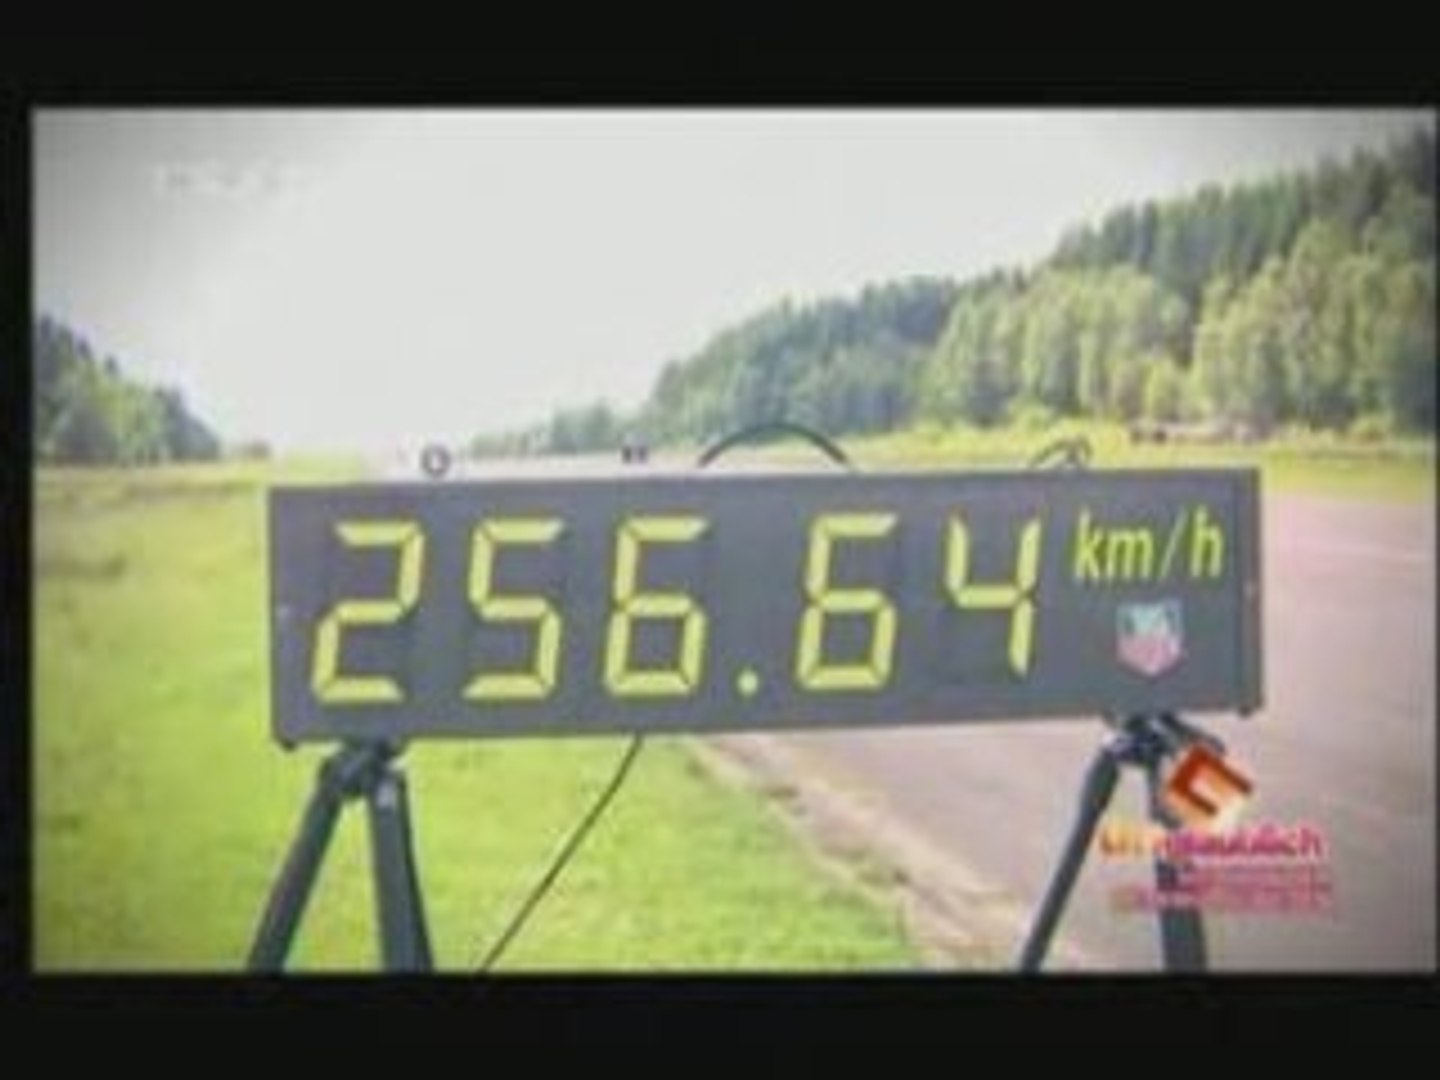 Record Roller à 256 km/h - Vidéo Dailymotion